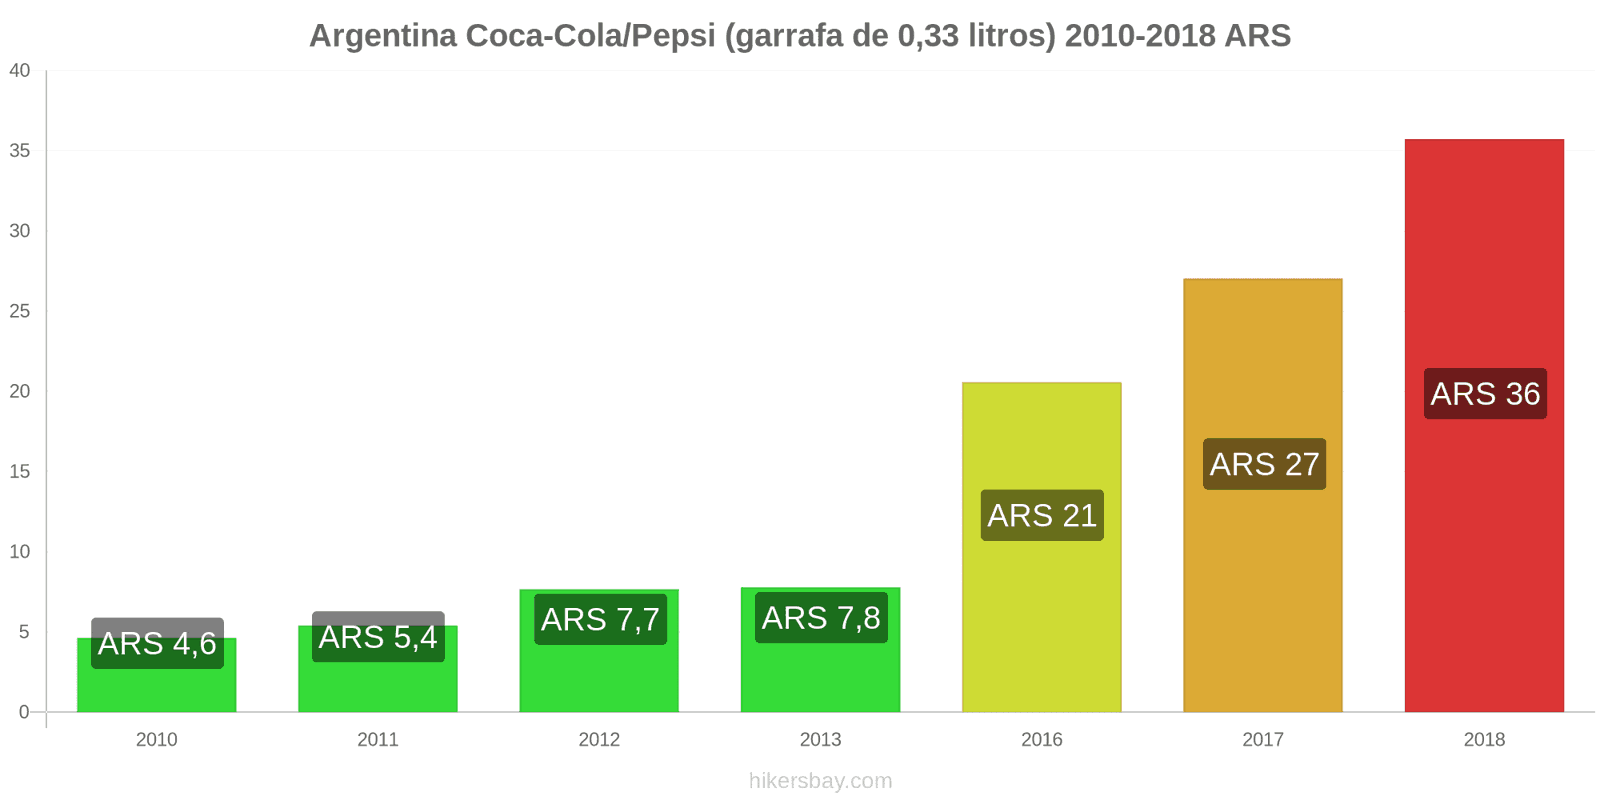 Argentina mudanças de preços Coca-Cola/Pepsi (garrafa de 0.33 litros) hikersbay.com